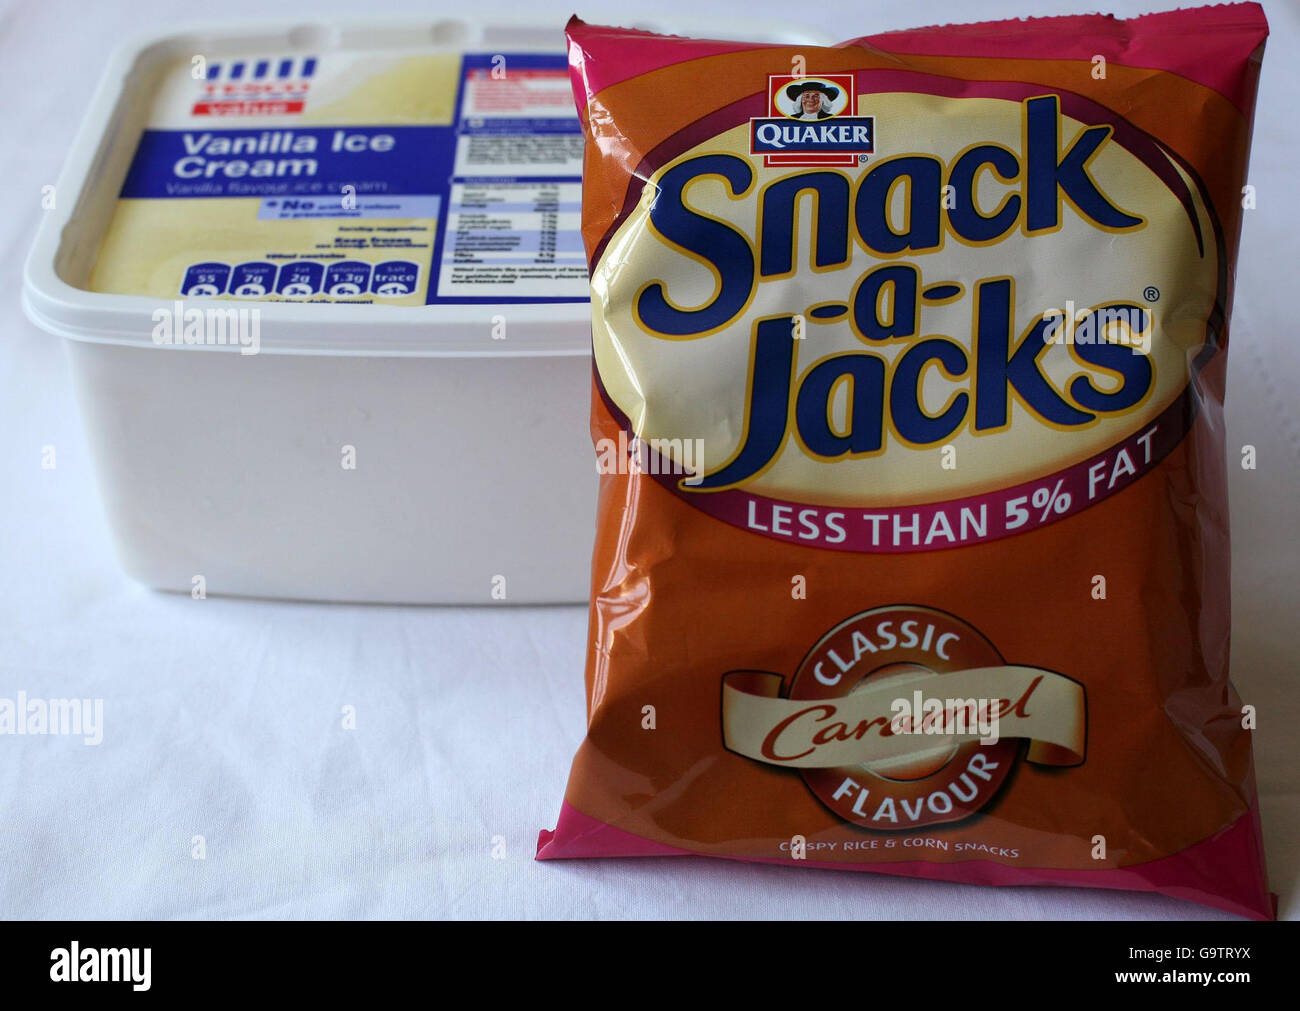 Vista di un pacchetto di snack-a-Jacks a basso contenuto di grassi e di una vasca di gelato di marca propria del supermercato, che sono stati utilizzati come un confronto in una nuova indagine sul contenuto di zucchero negli alimenti. Foto Stock